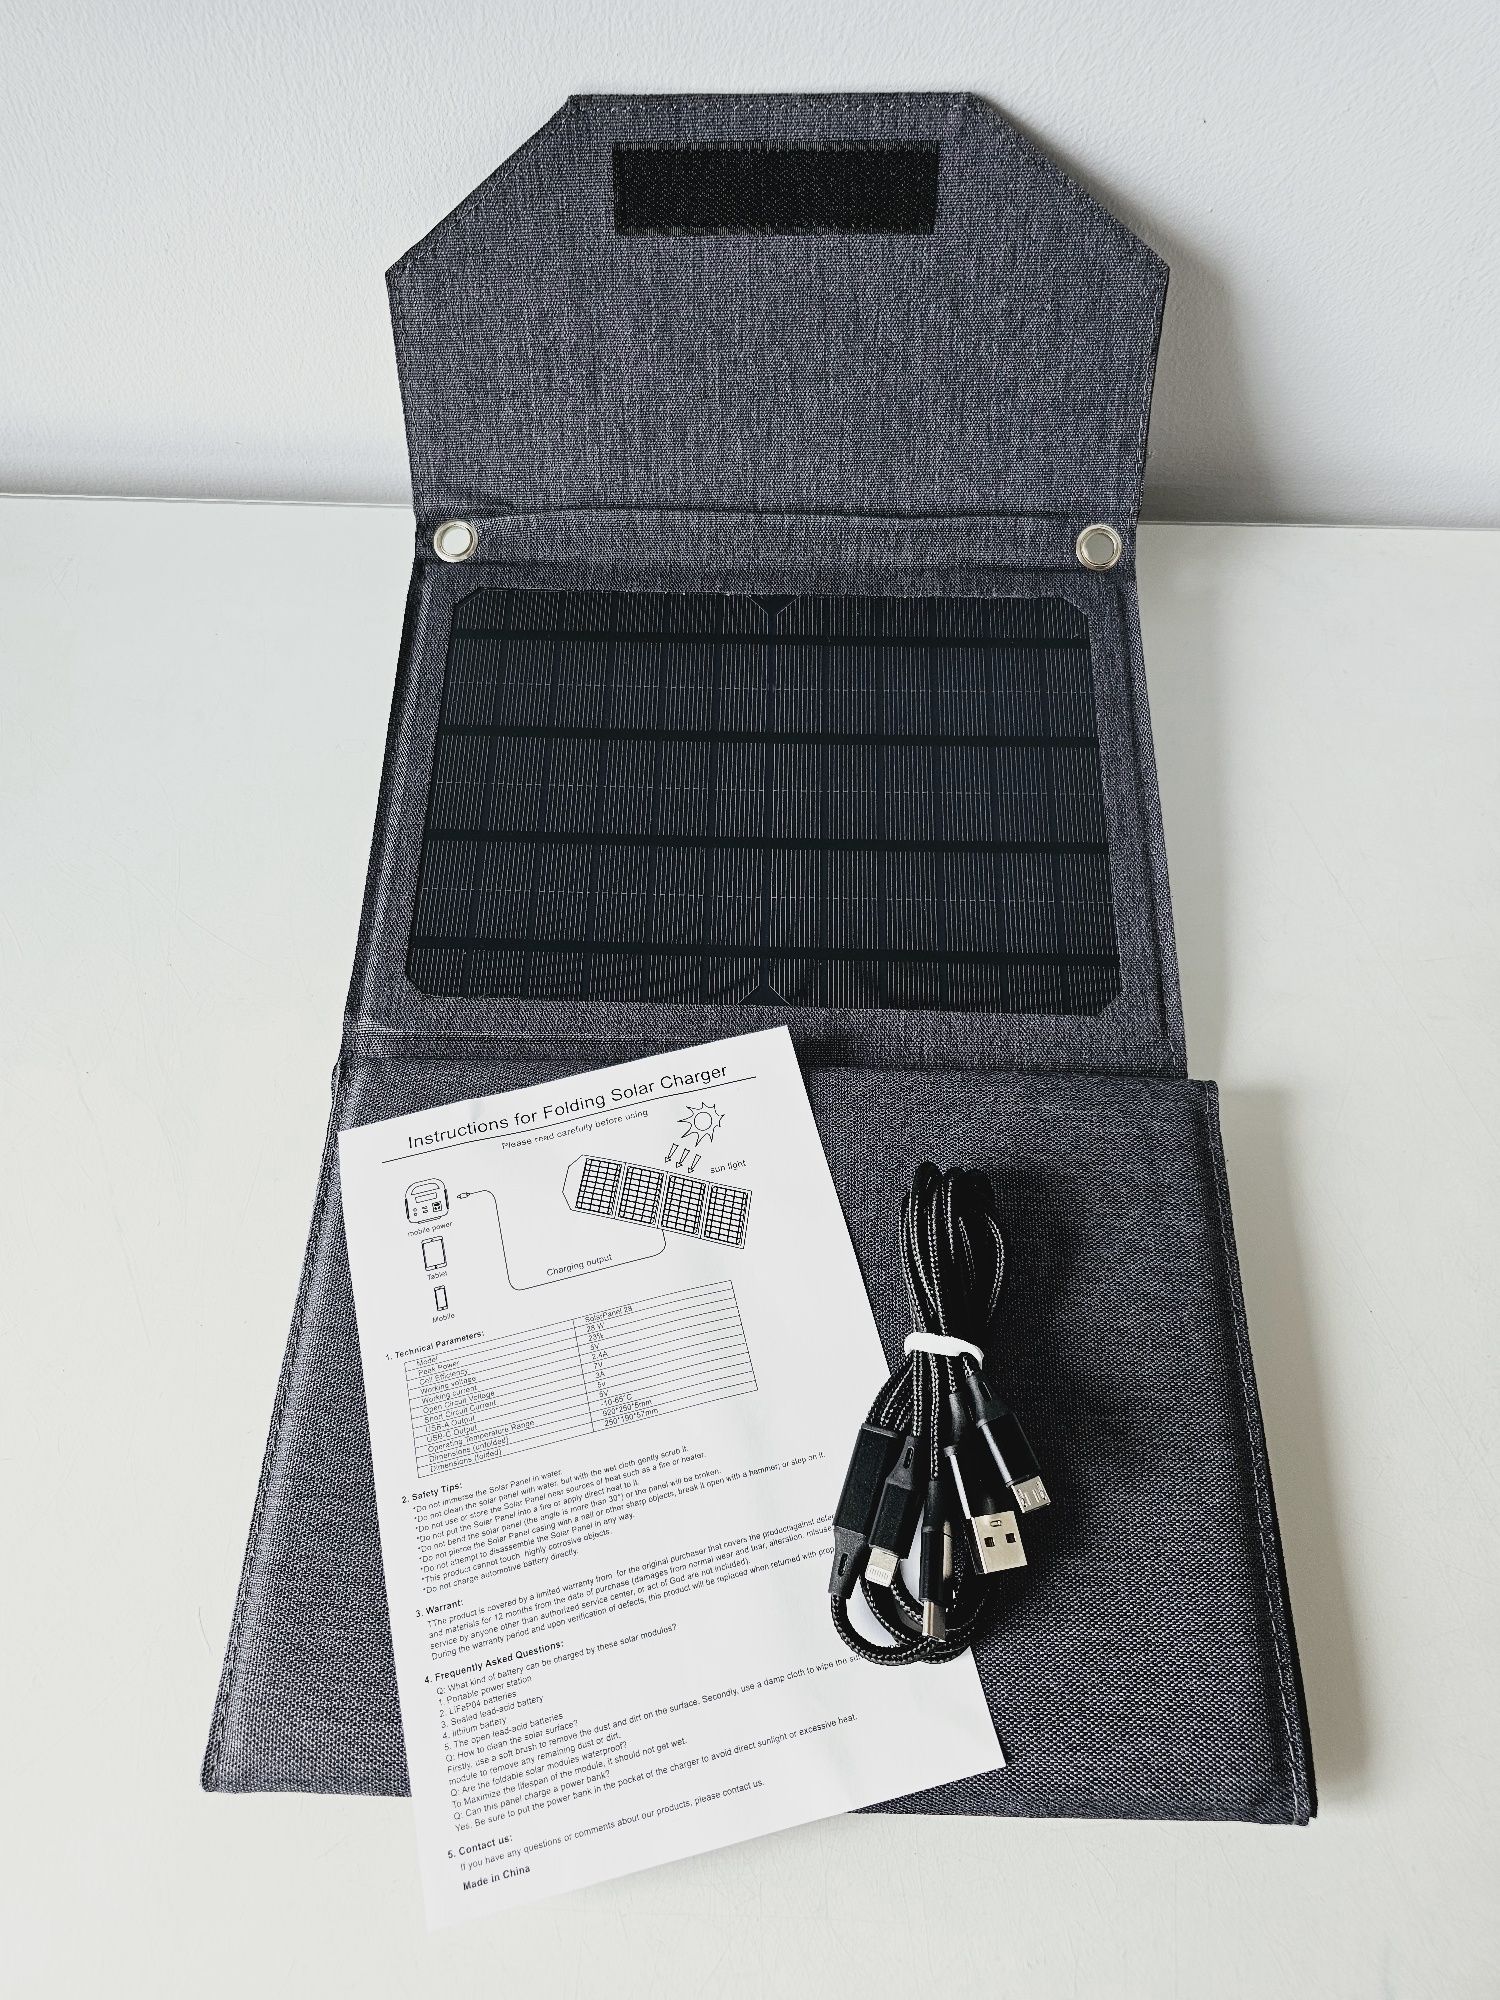 Przenośny składany panel słoneczny 28W 2xUSB torba